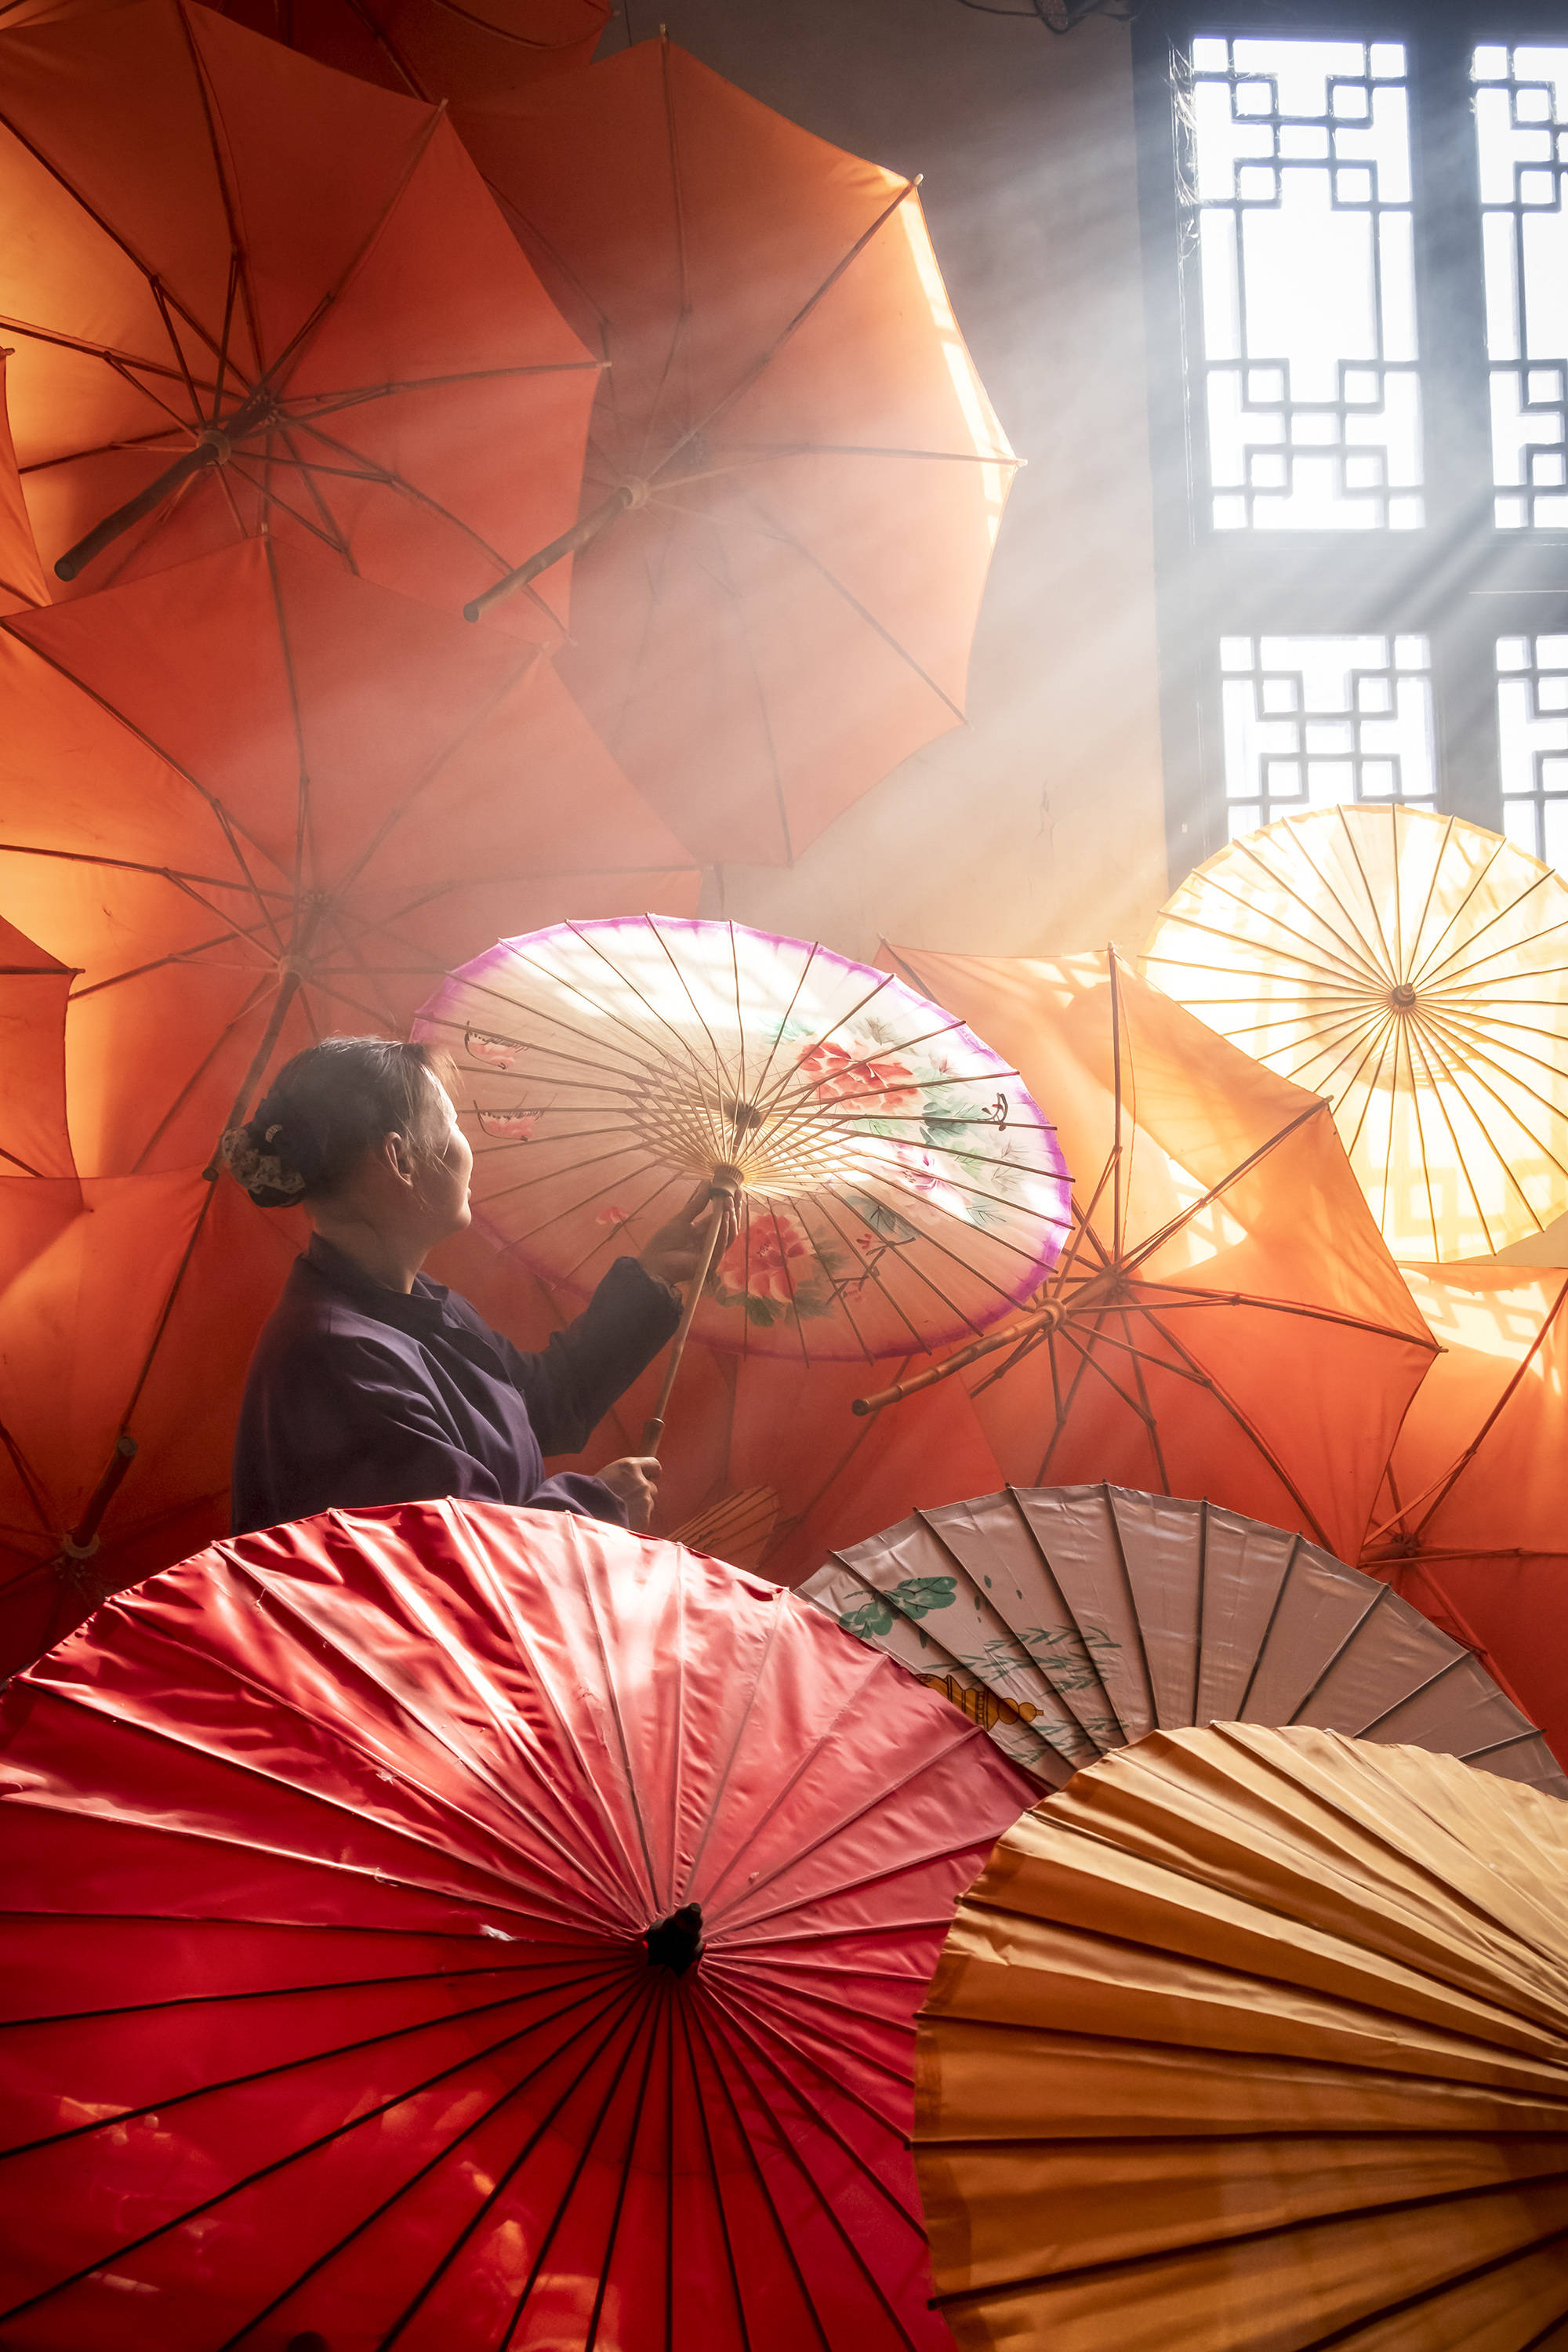 实拍安徽泾县油纸伞,弧度优美伞盖,非常精致